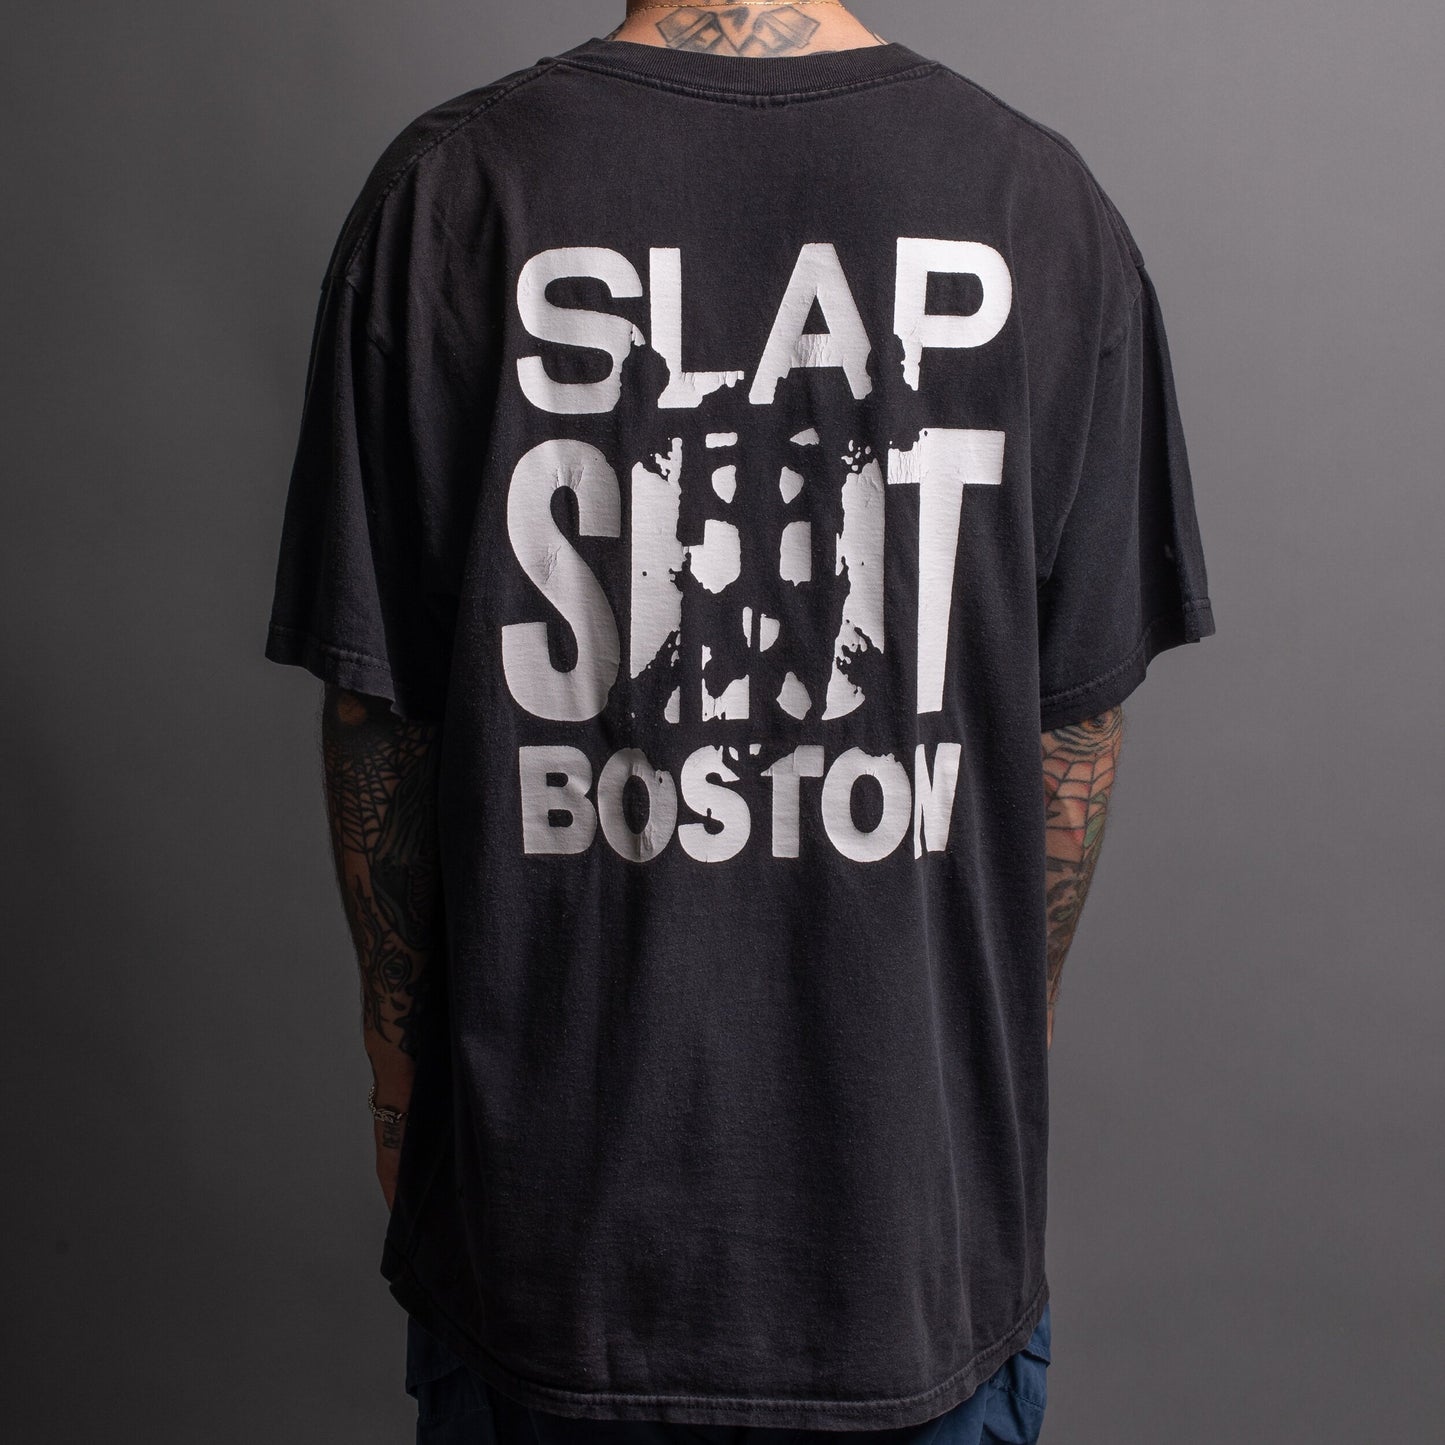 Vintage 90’s Slapshot T-Shirt